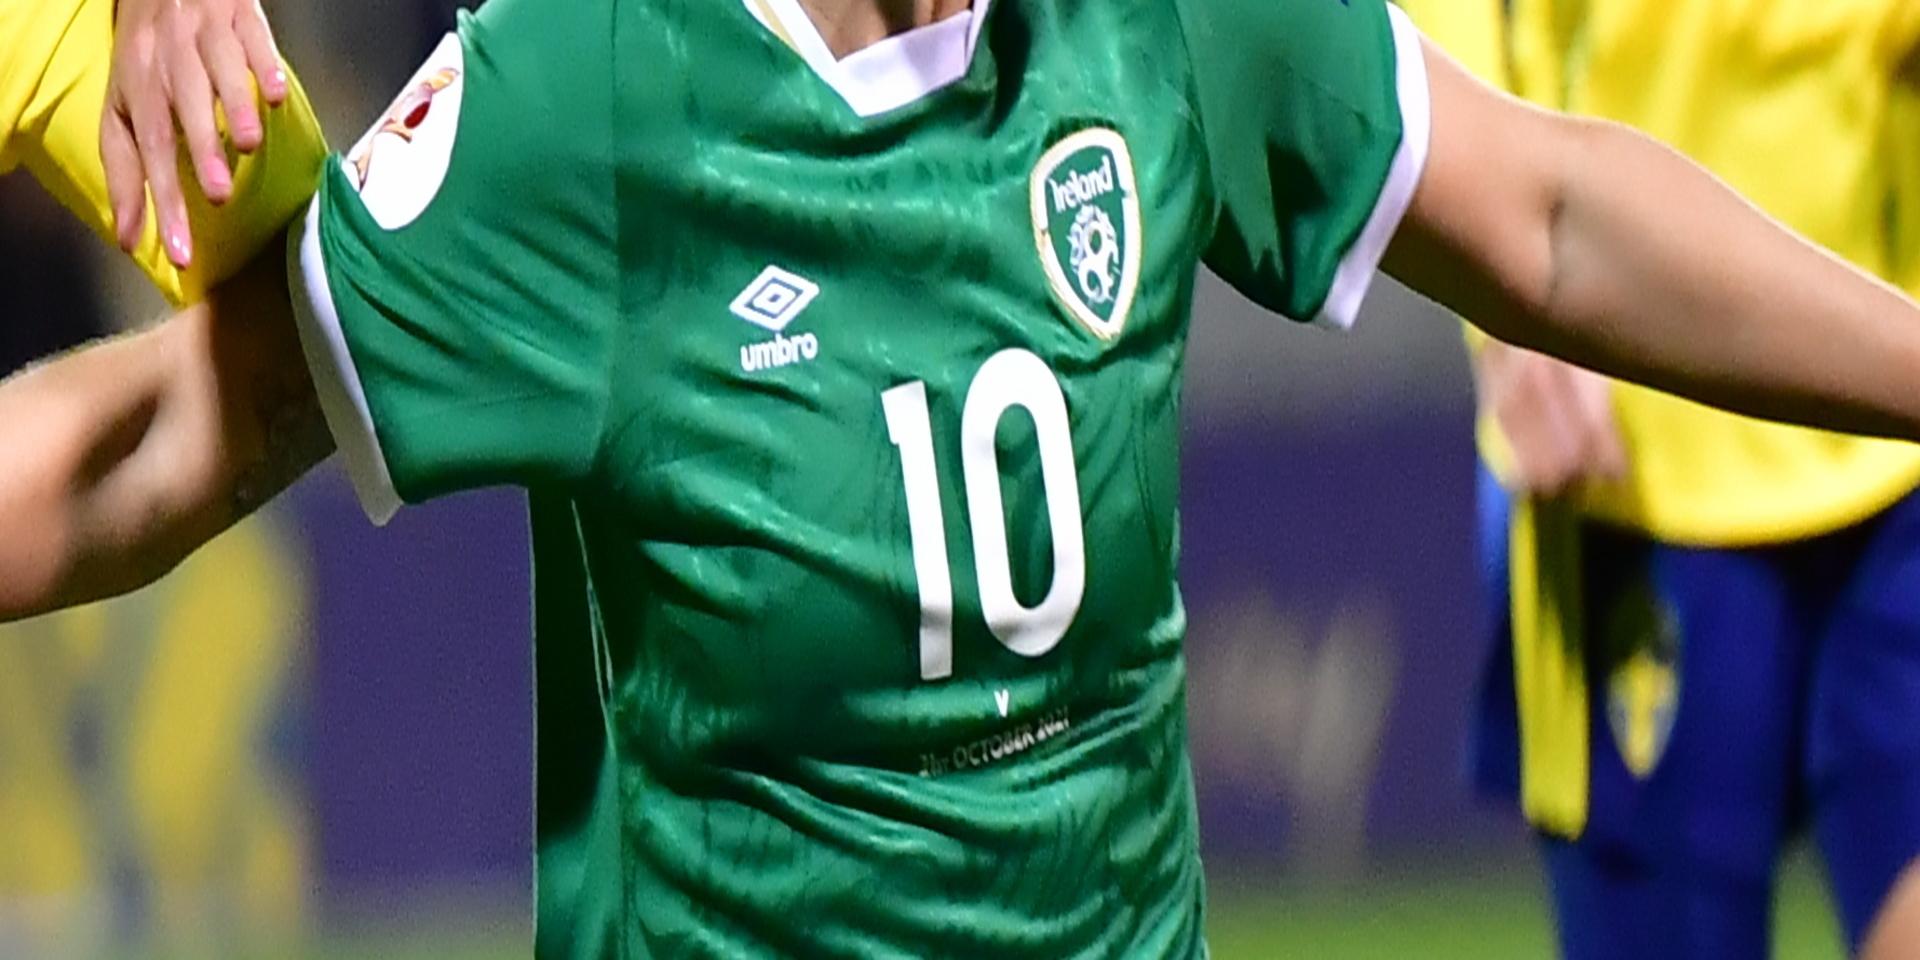 Irlands Denise O'Sullivan avgjorde VM-kvalmatchen mot Finland. Här under kvalmatchen mot Sverige i torsdags.